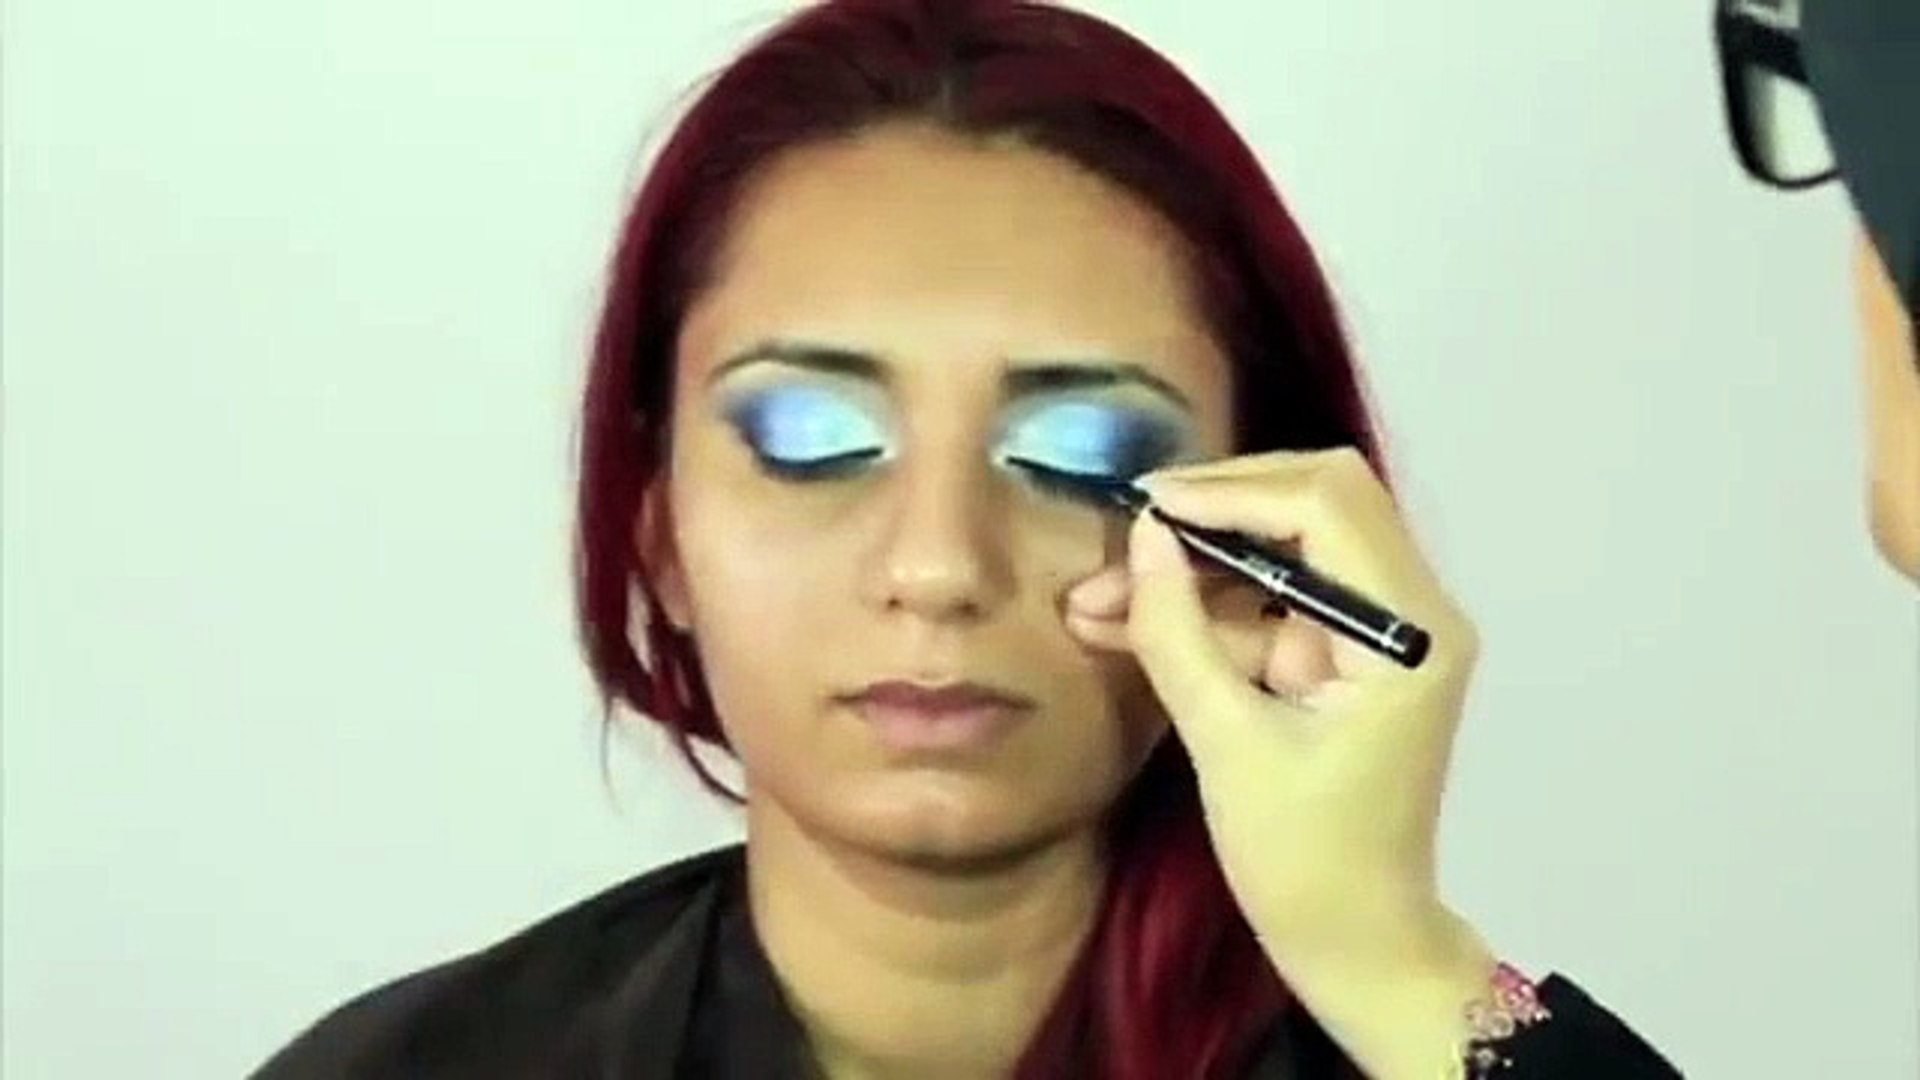 00:56 Gets Detail Of New Waterproof Eye Liner Eyeliner Shadow Gel Makeup Cosmetic Top Gets Detail Of